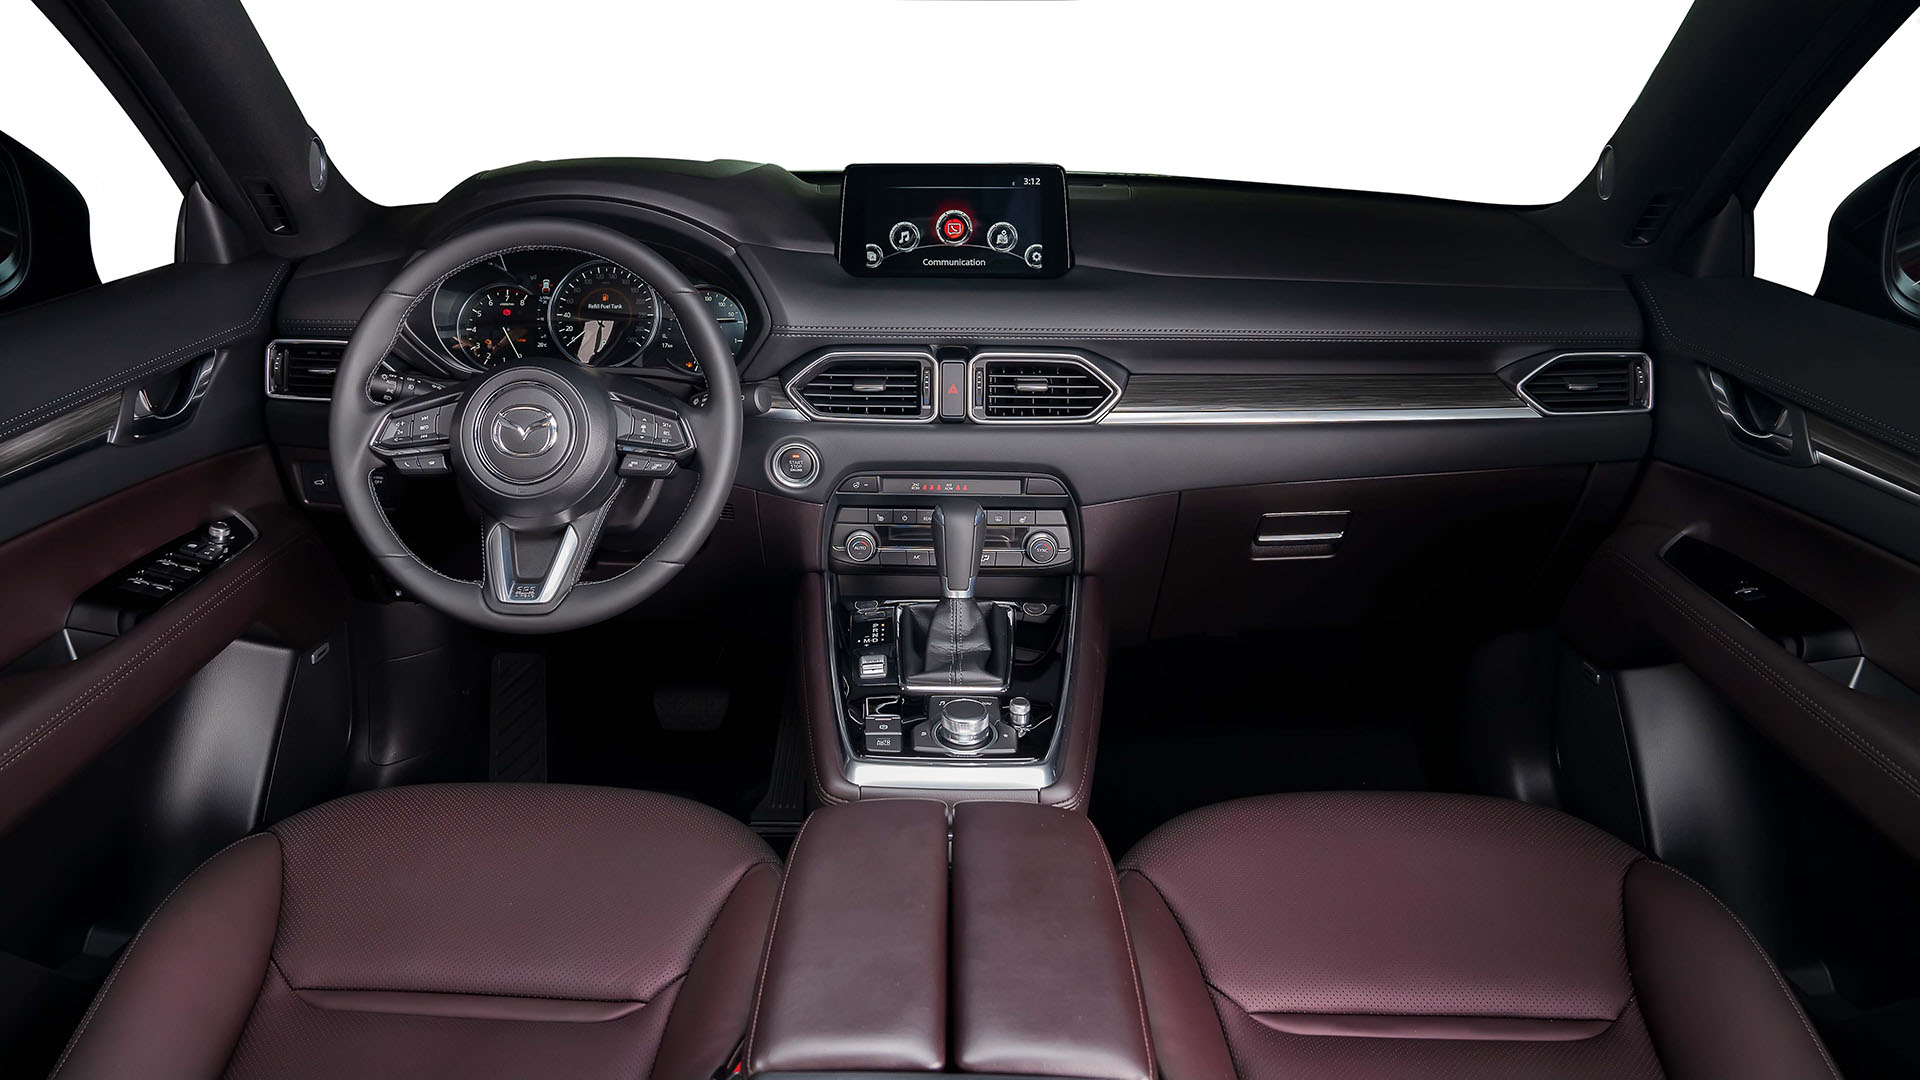 Mazda CX-8 bản nâng cấp ra mắt tại Việt Nam, giá từ 1,079 tỷ đồng new-mazda.jpeg